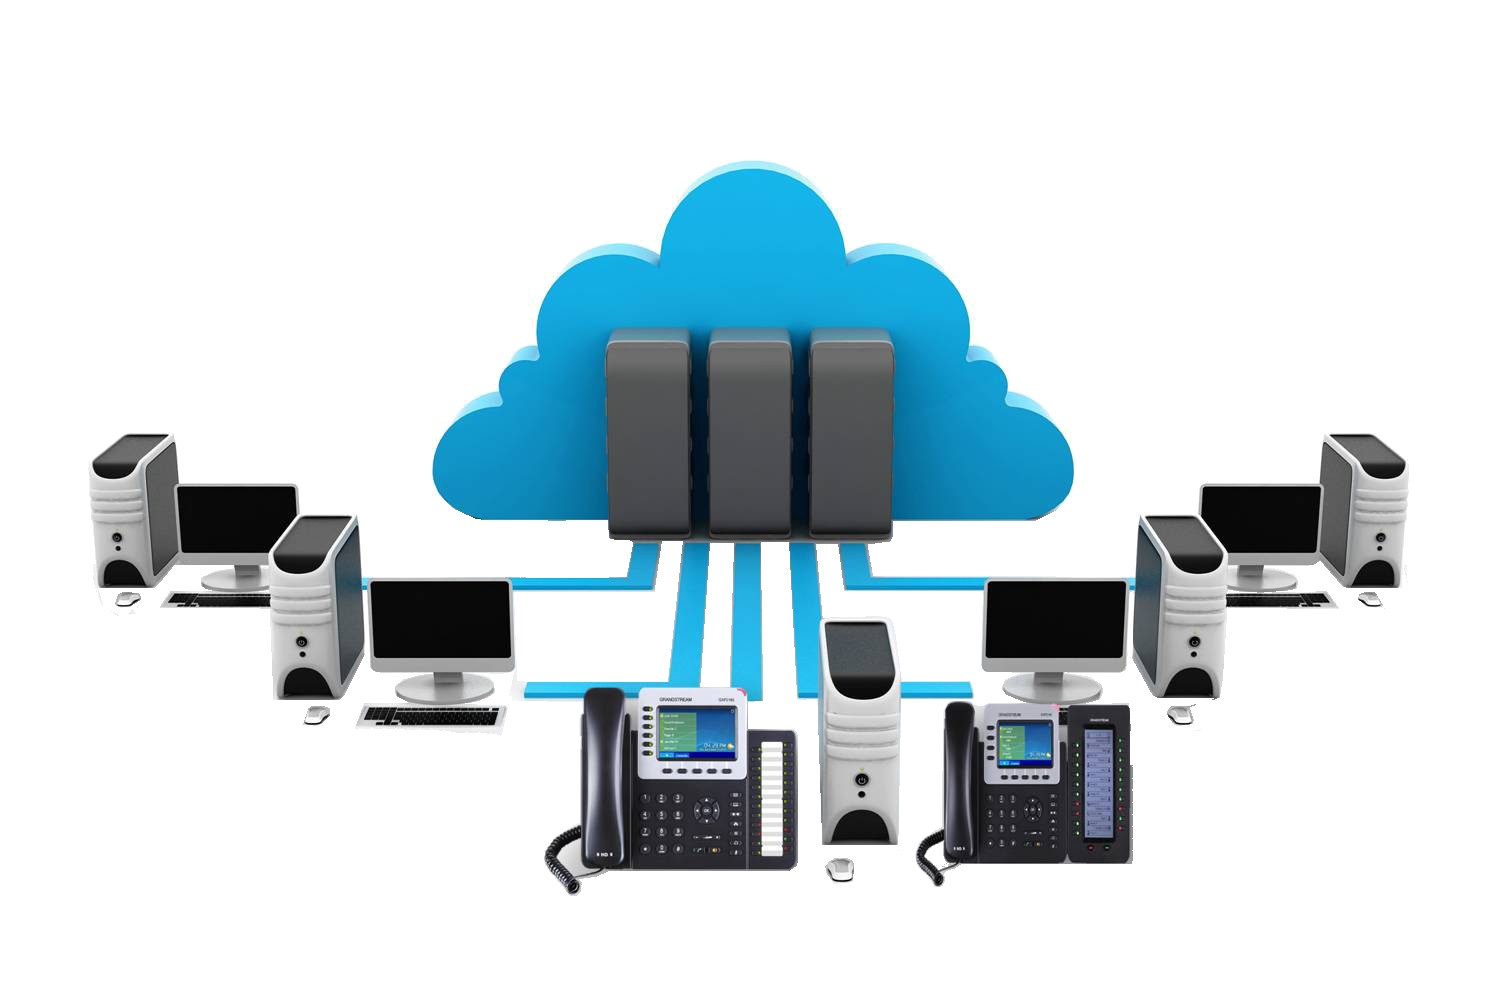 CloudFone cung cấp dịch vụ tổng đài ảo giá rẻ, không phí bảo trì